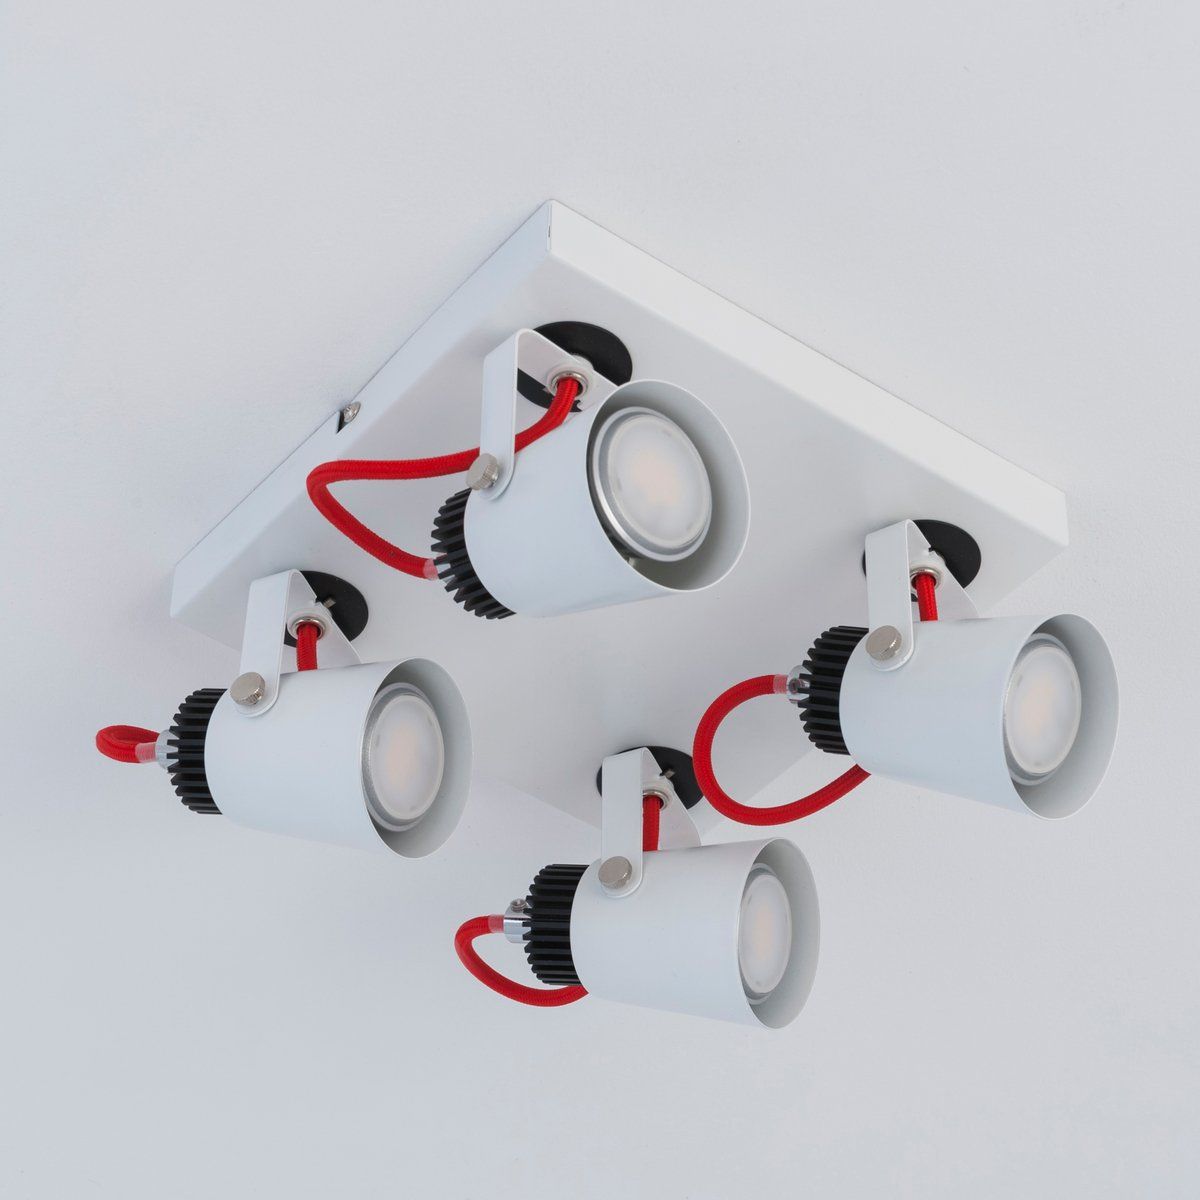 Plafonnier spot orientable REDCABLE blanc, noir et rouge en métal